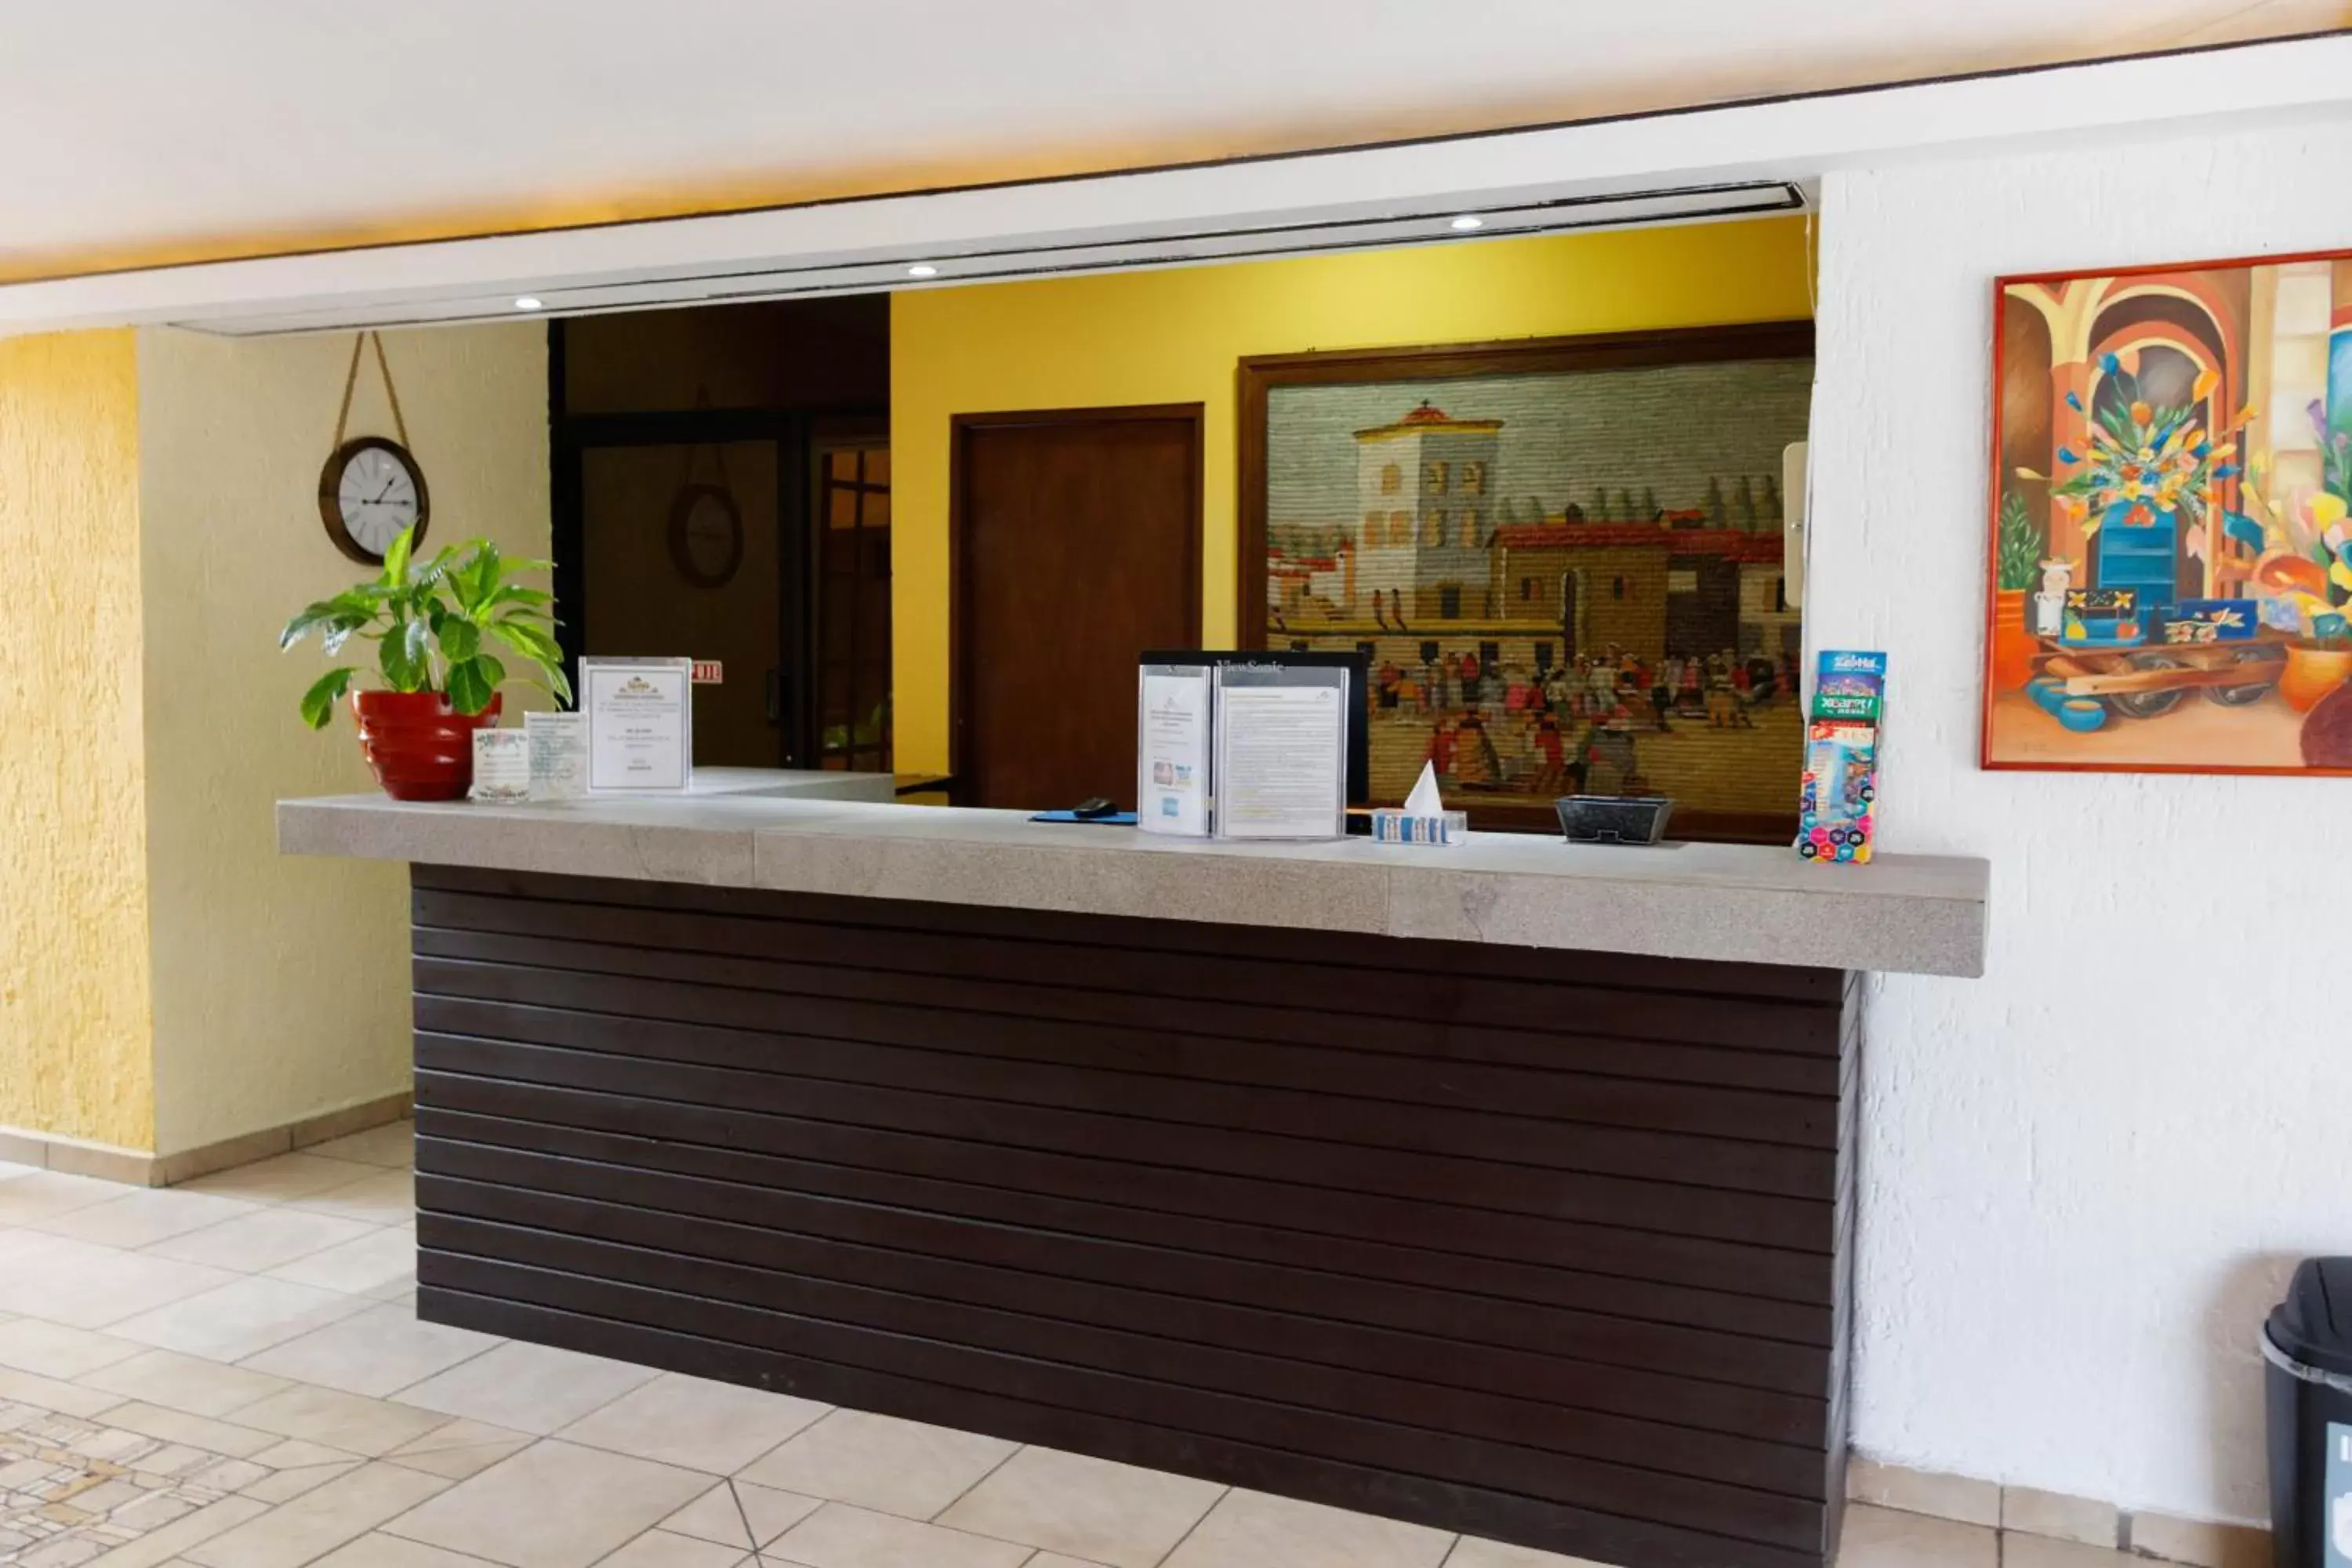 Lobby or reception, Lobby/Reception in Hotel Hacienda Cancun